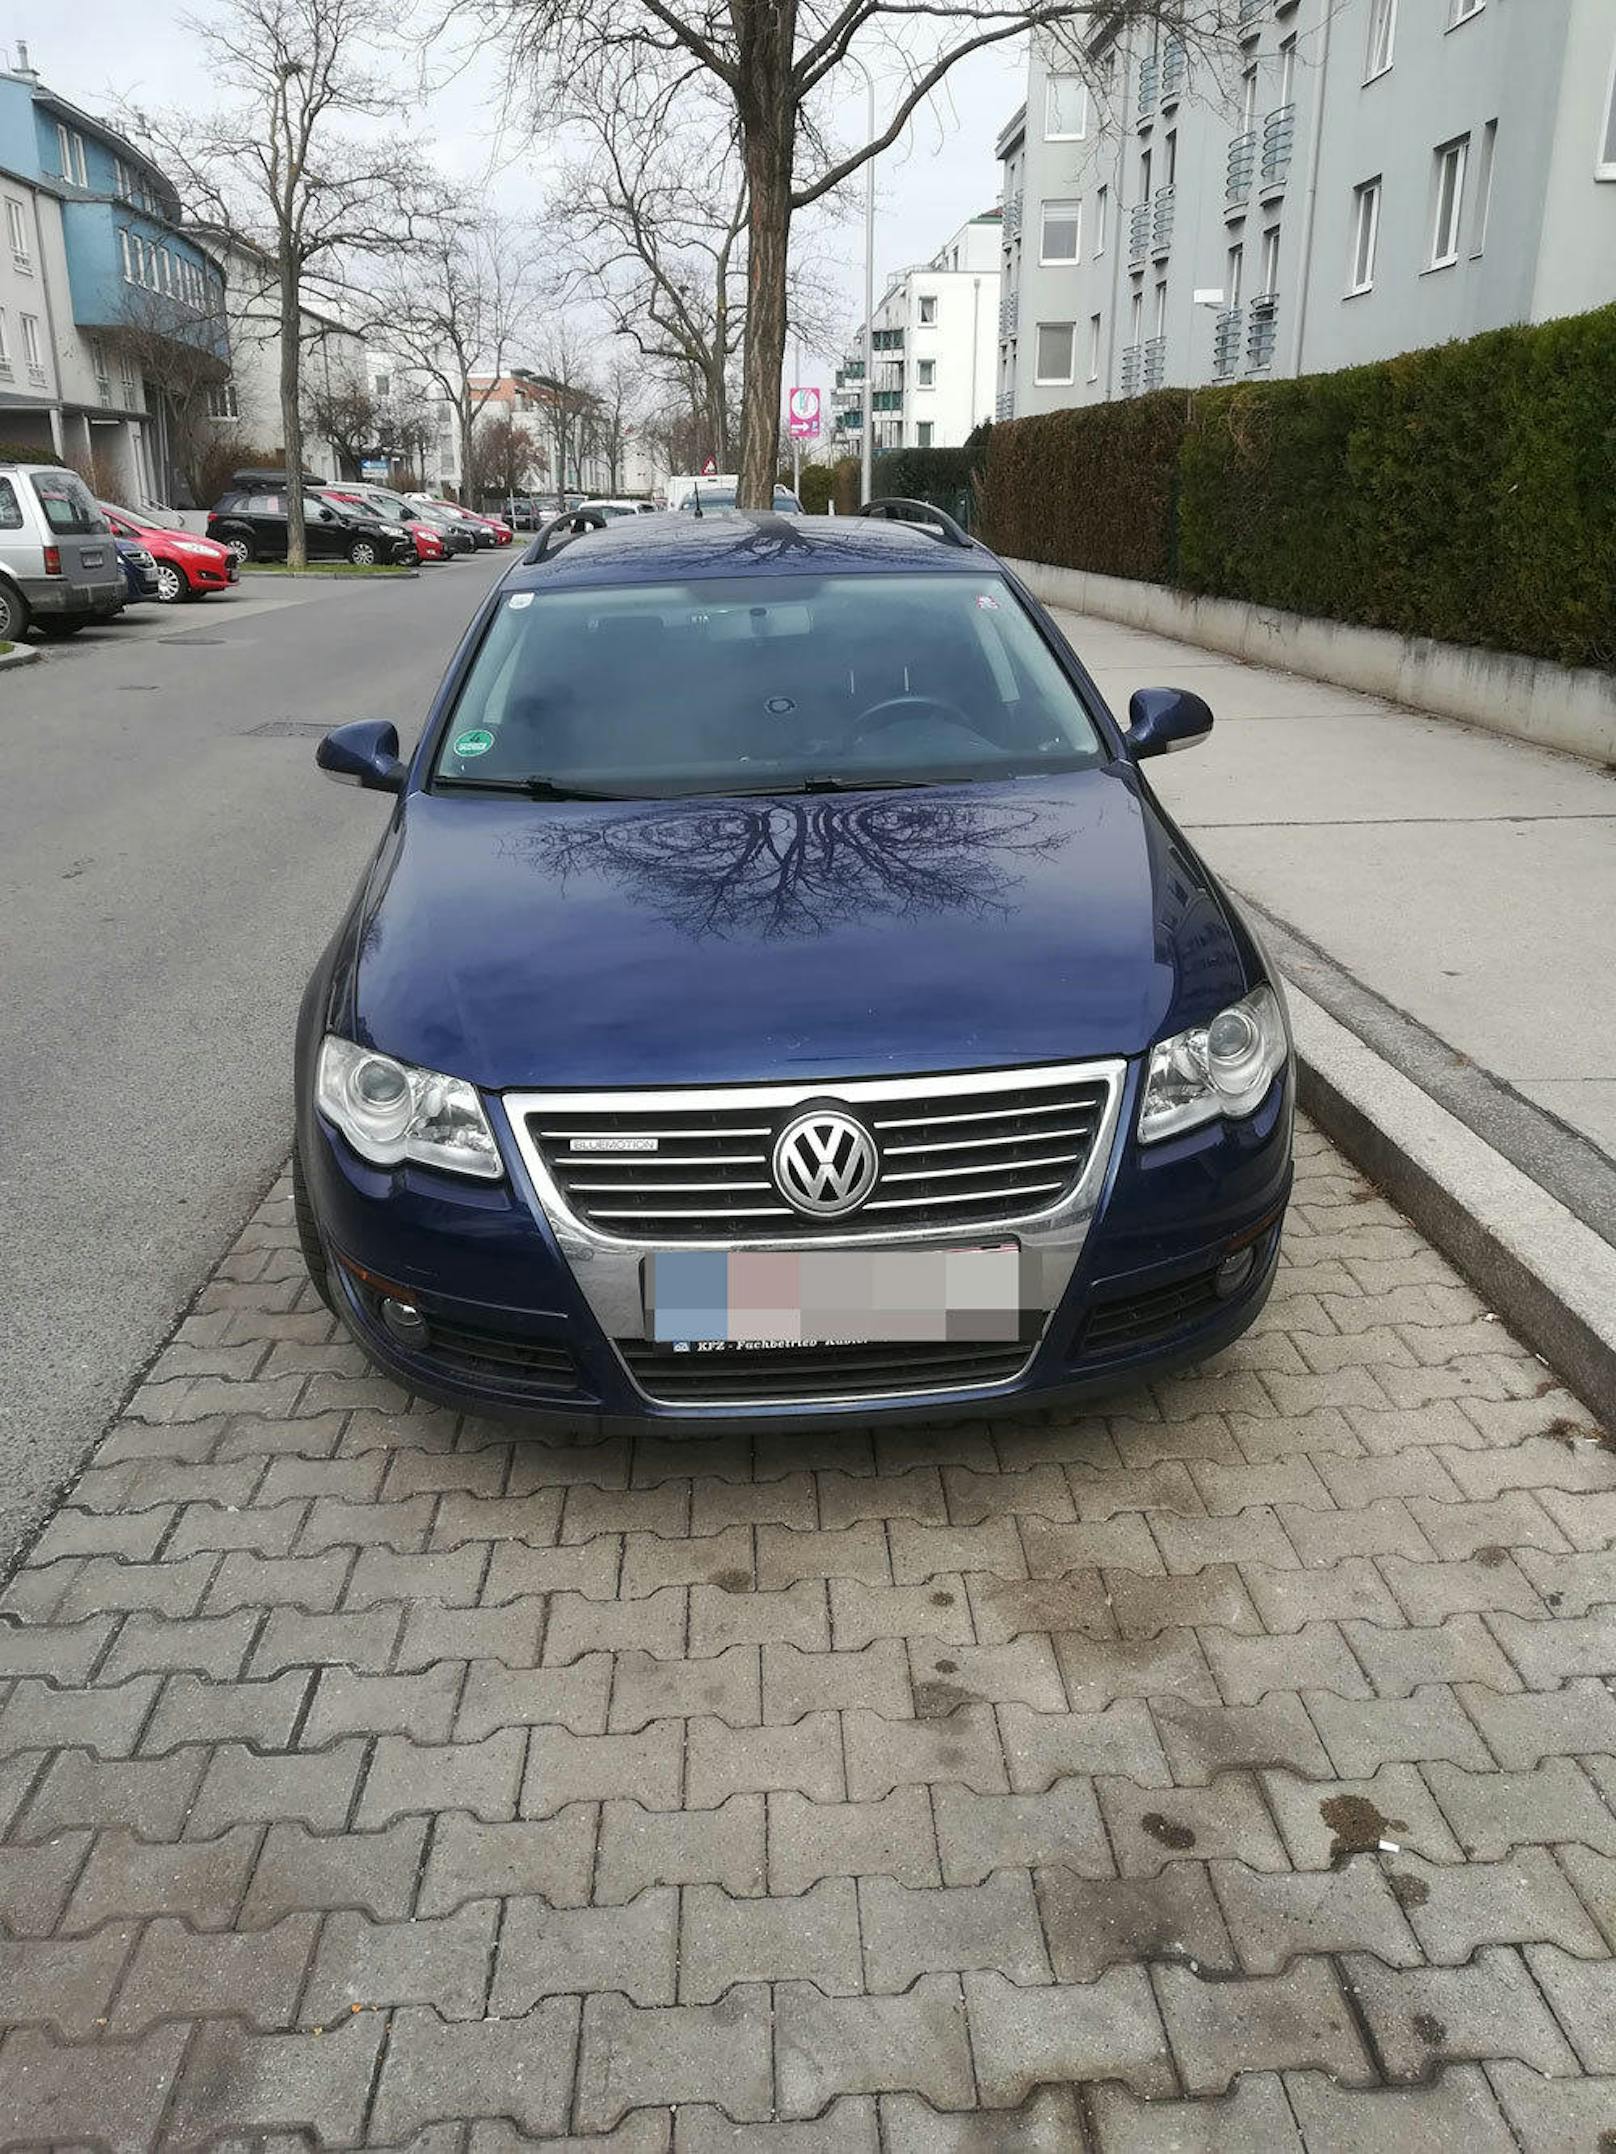 VW von Aurel George aus Wien